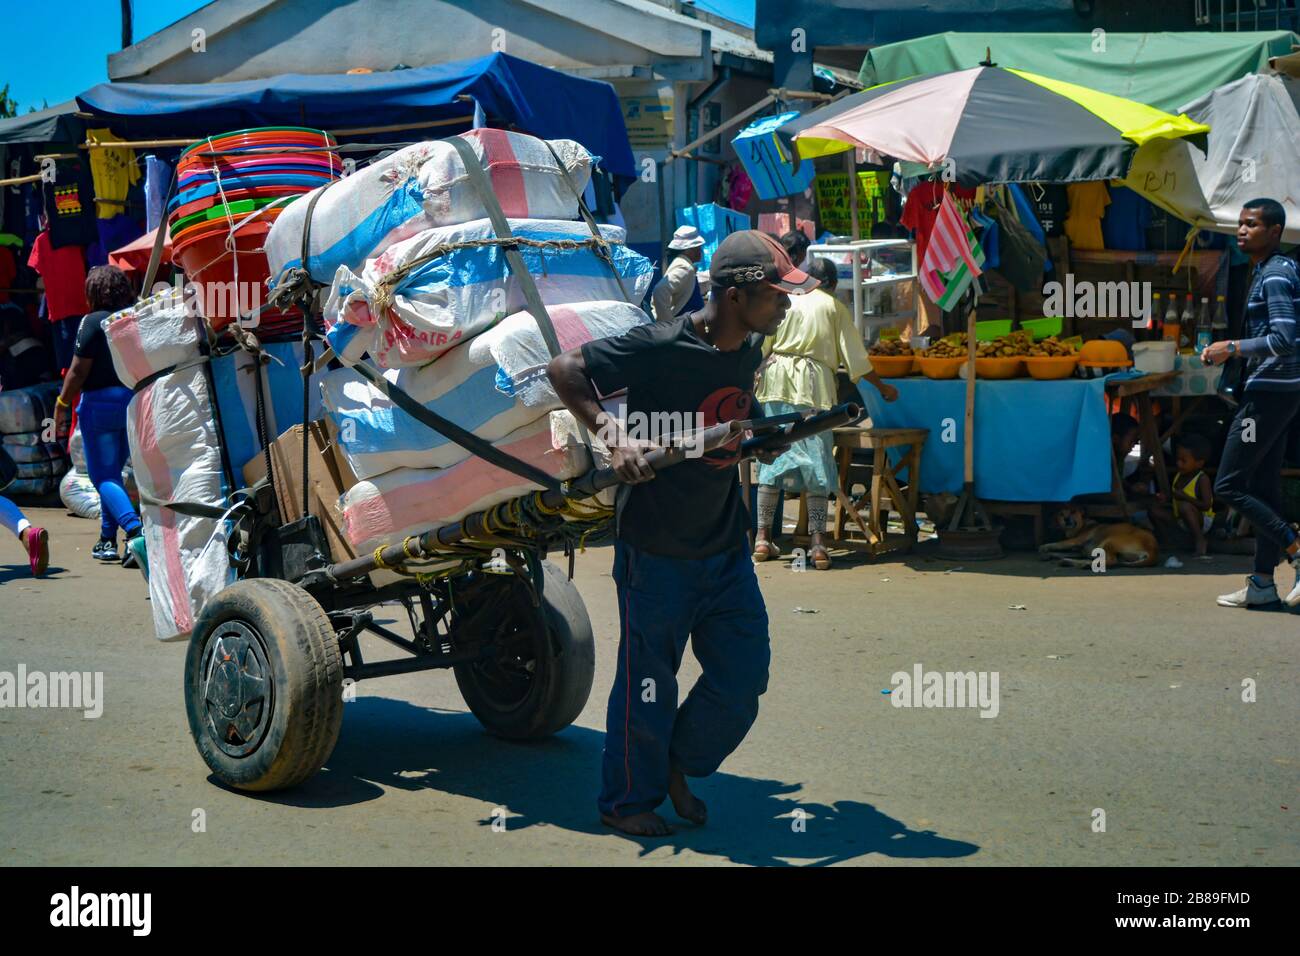 Antananarivo, Madagascar, Afrique - 01/12/20: Un homme noir, pieds nus, porte une lourde charrette pleine de sacs de farine et de seaux. Travail dur sur un marché Banque D'Images